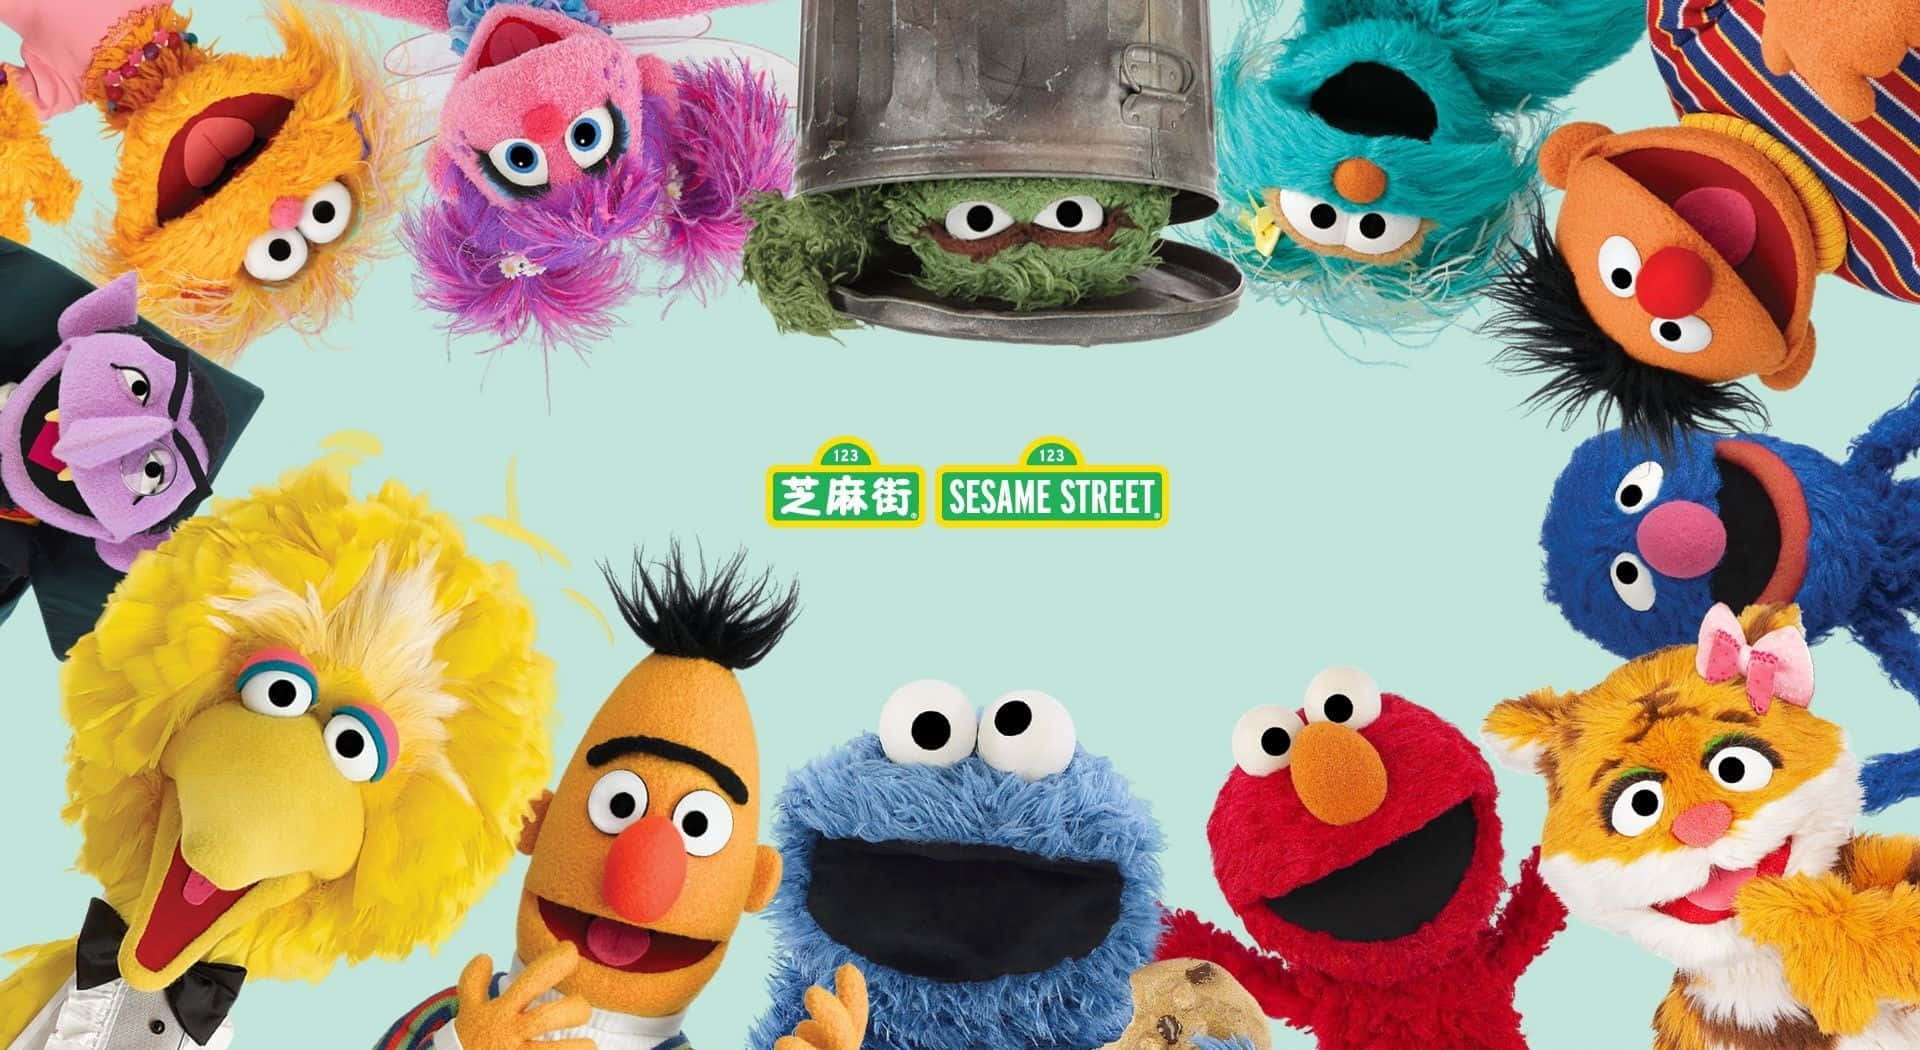 Blivmedlem Af Banden På Sesame Street!